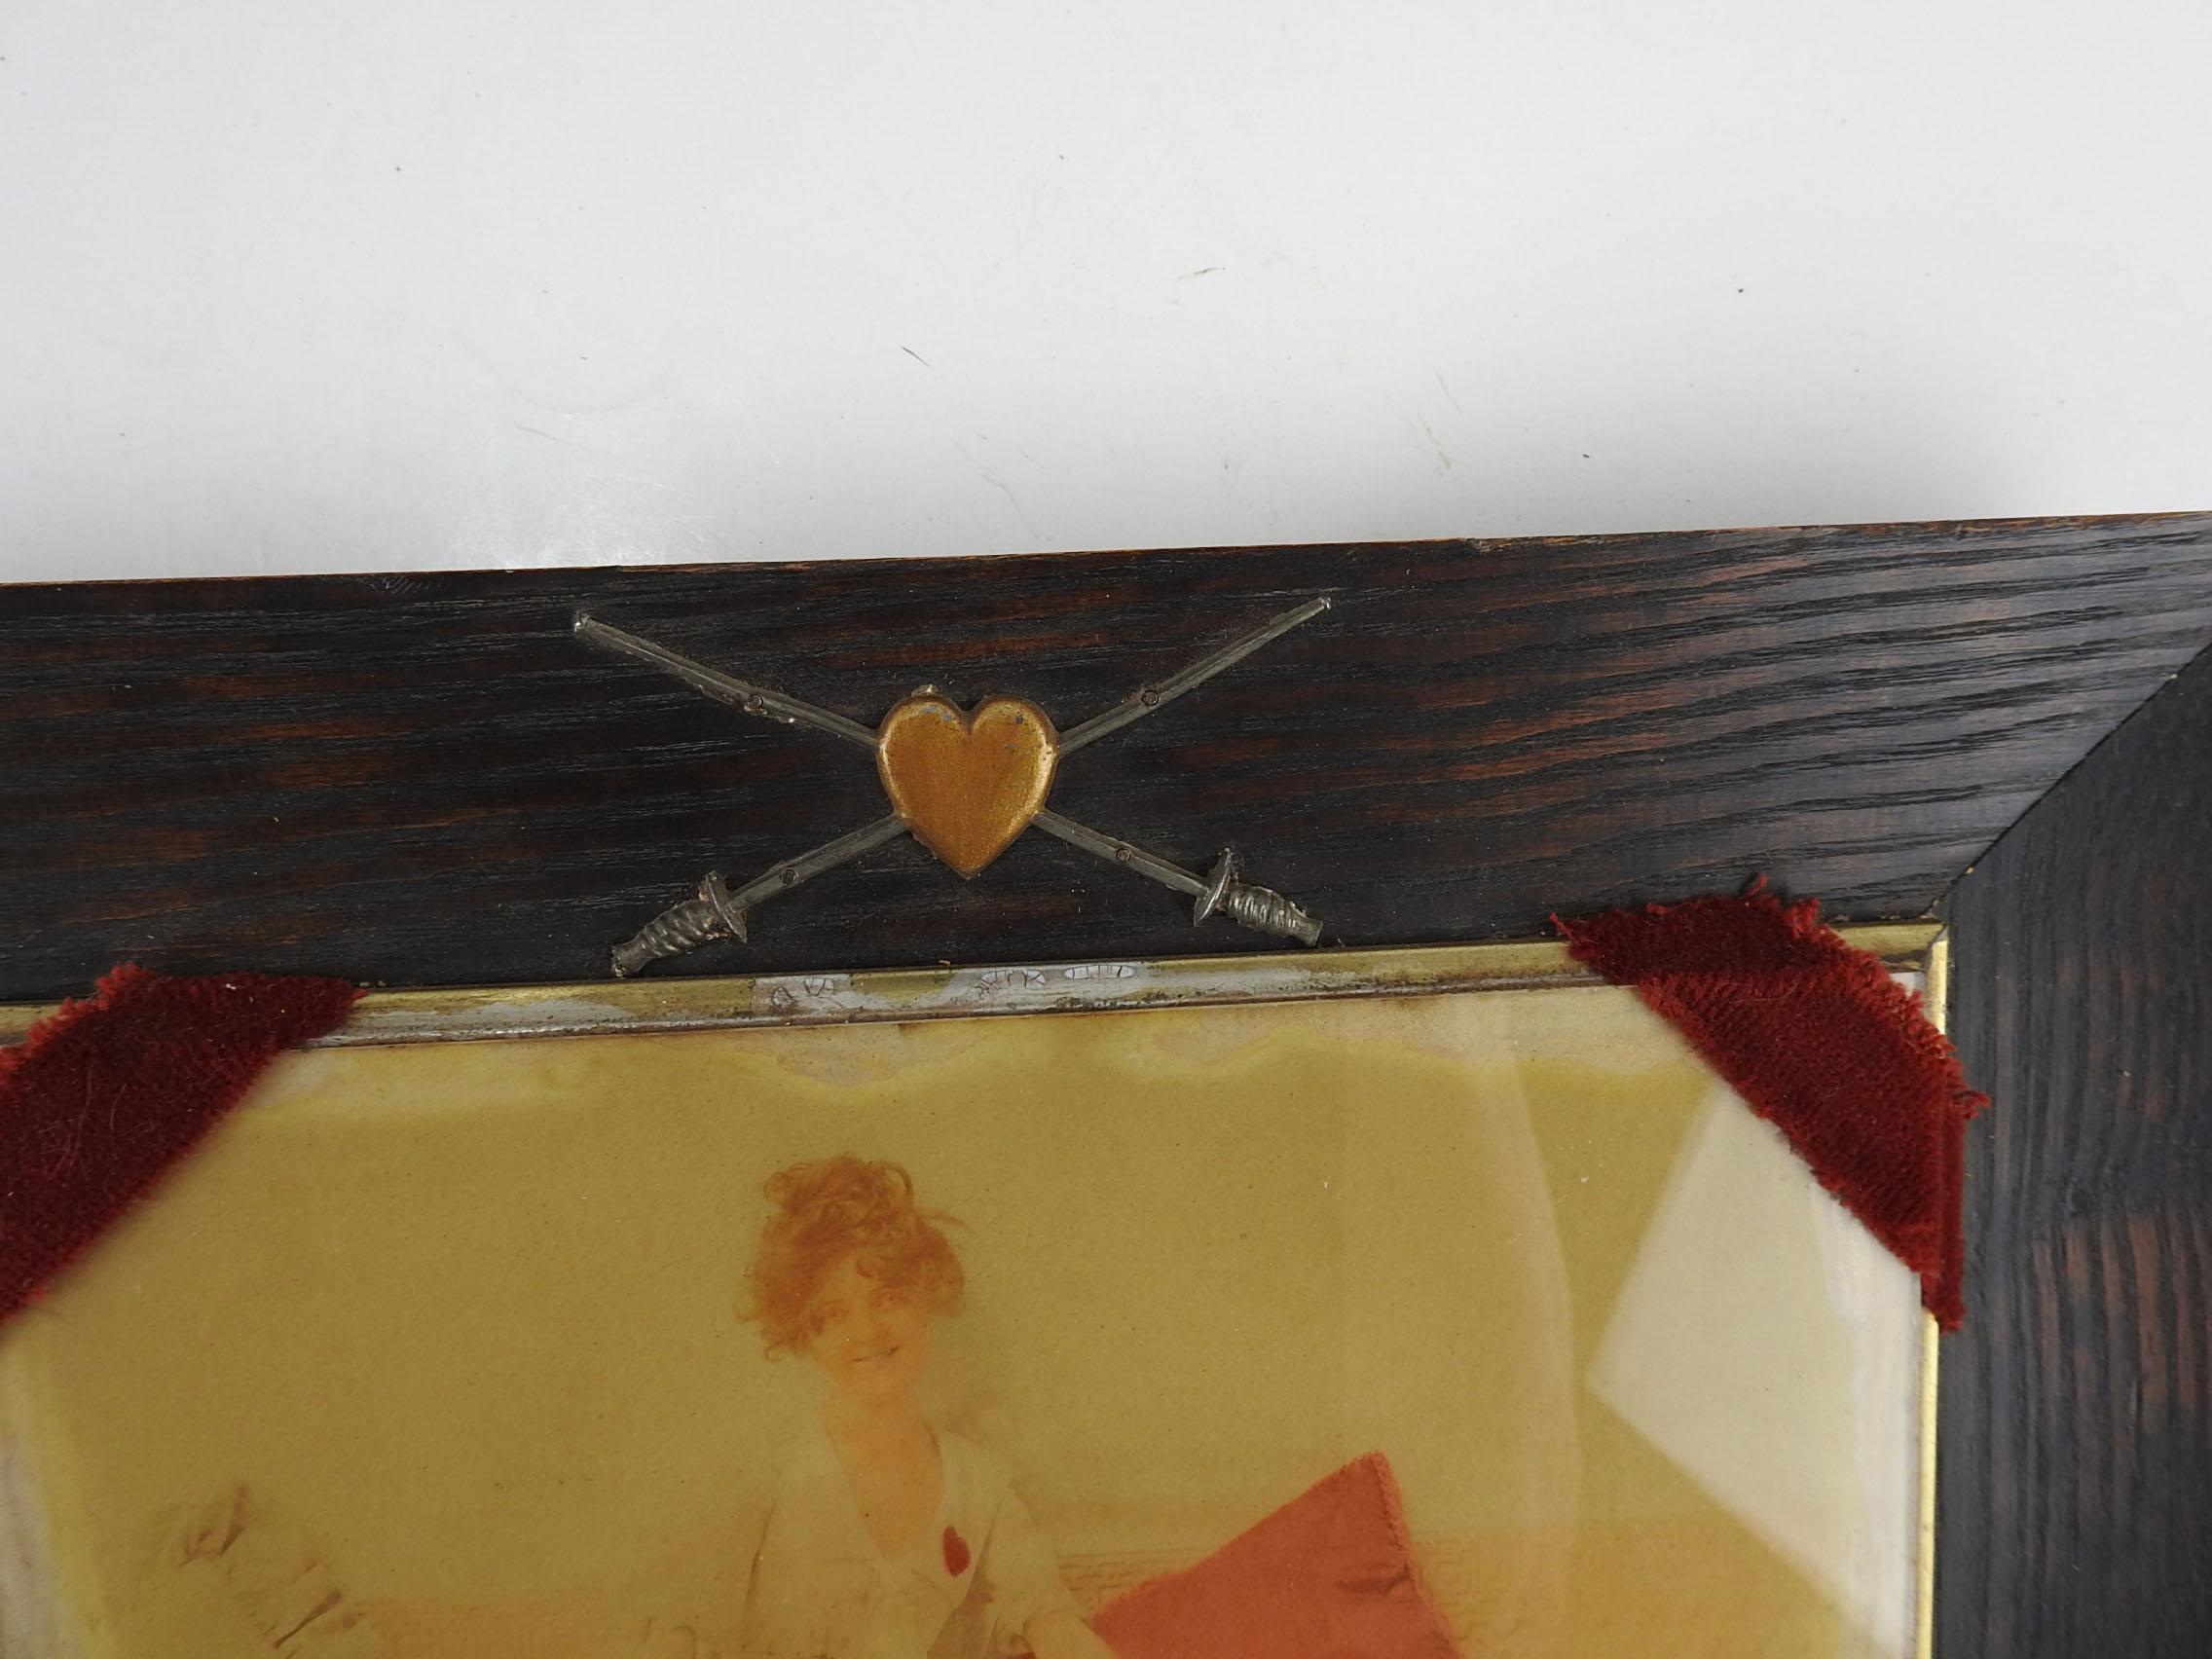 CIRCA 1900 Fechten thematische Fotografie der Frau in Fechtkleidung mit rotem Herz hält einen Degen.  Rot getöntes Kissen und Herz, originaler Eichenrahmen mit Herz und gekreuzten Zaunfolien.  Foto ist unter Glas, auf der Oberseite des Rahmens mit